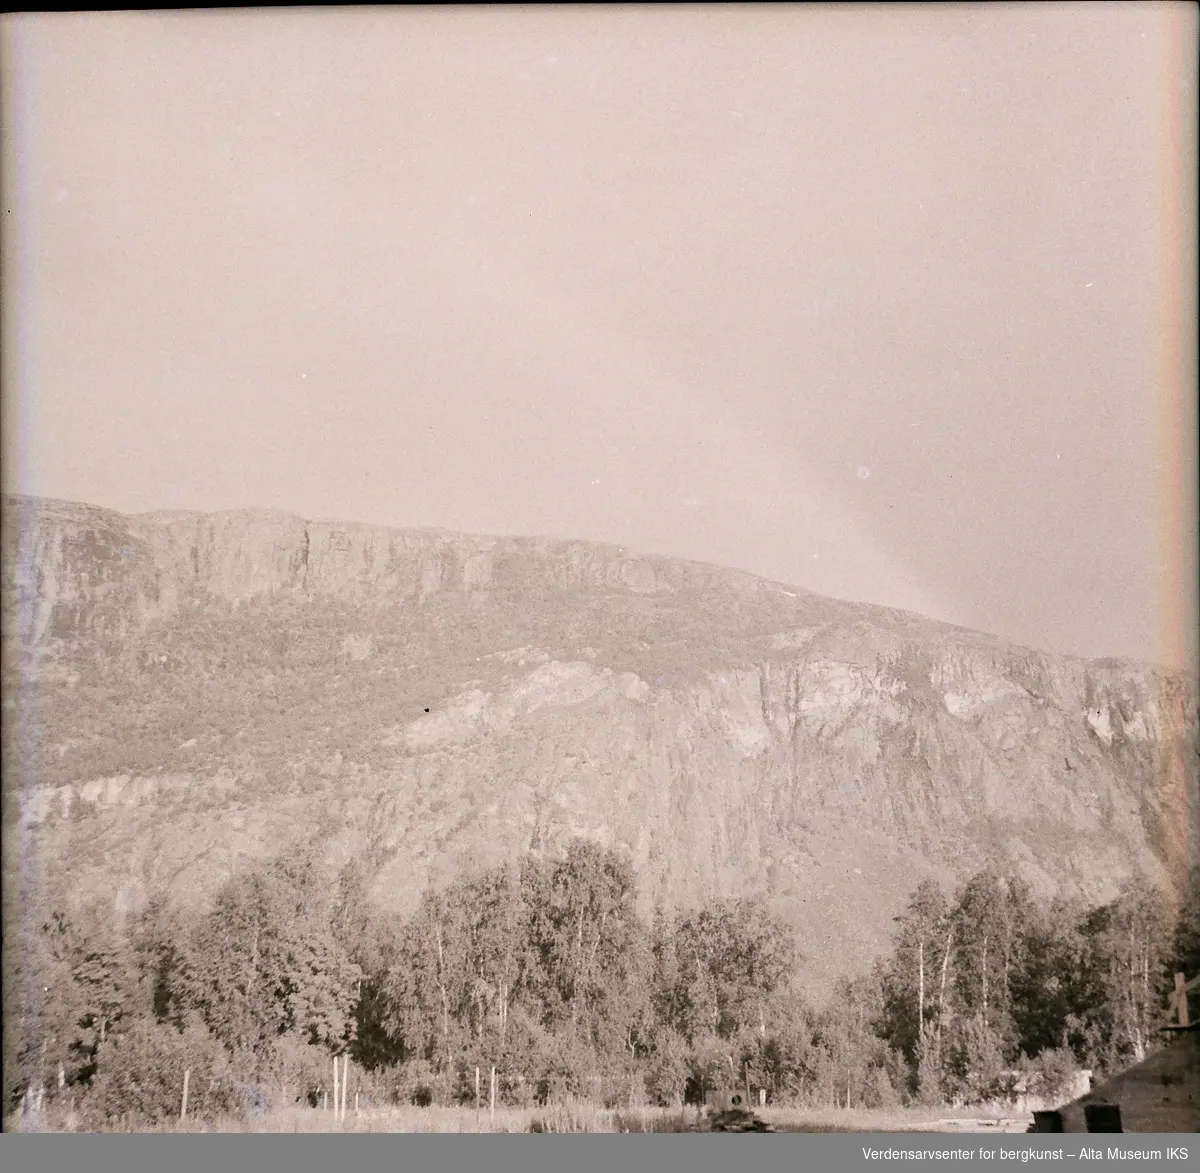 Landskapsbilde fra Jøraholmen. Skog med fjell i bakgrunnen.
Bildet er tatt mellom 1930 og 1950.